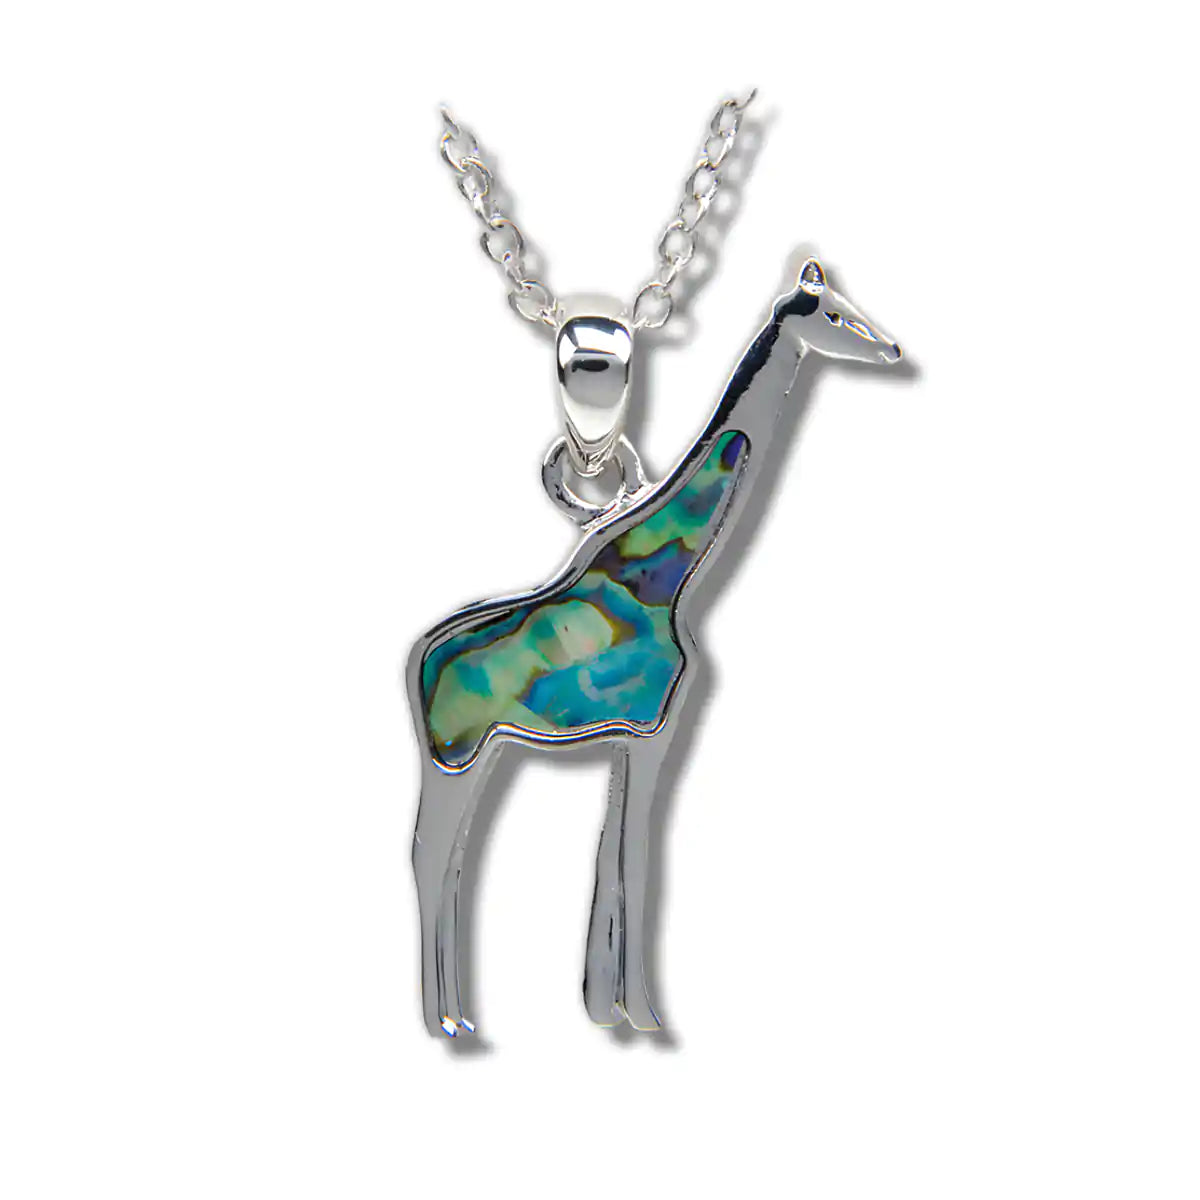 Glacier pearle giraffe necklace